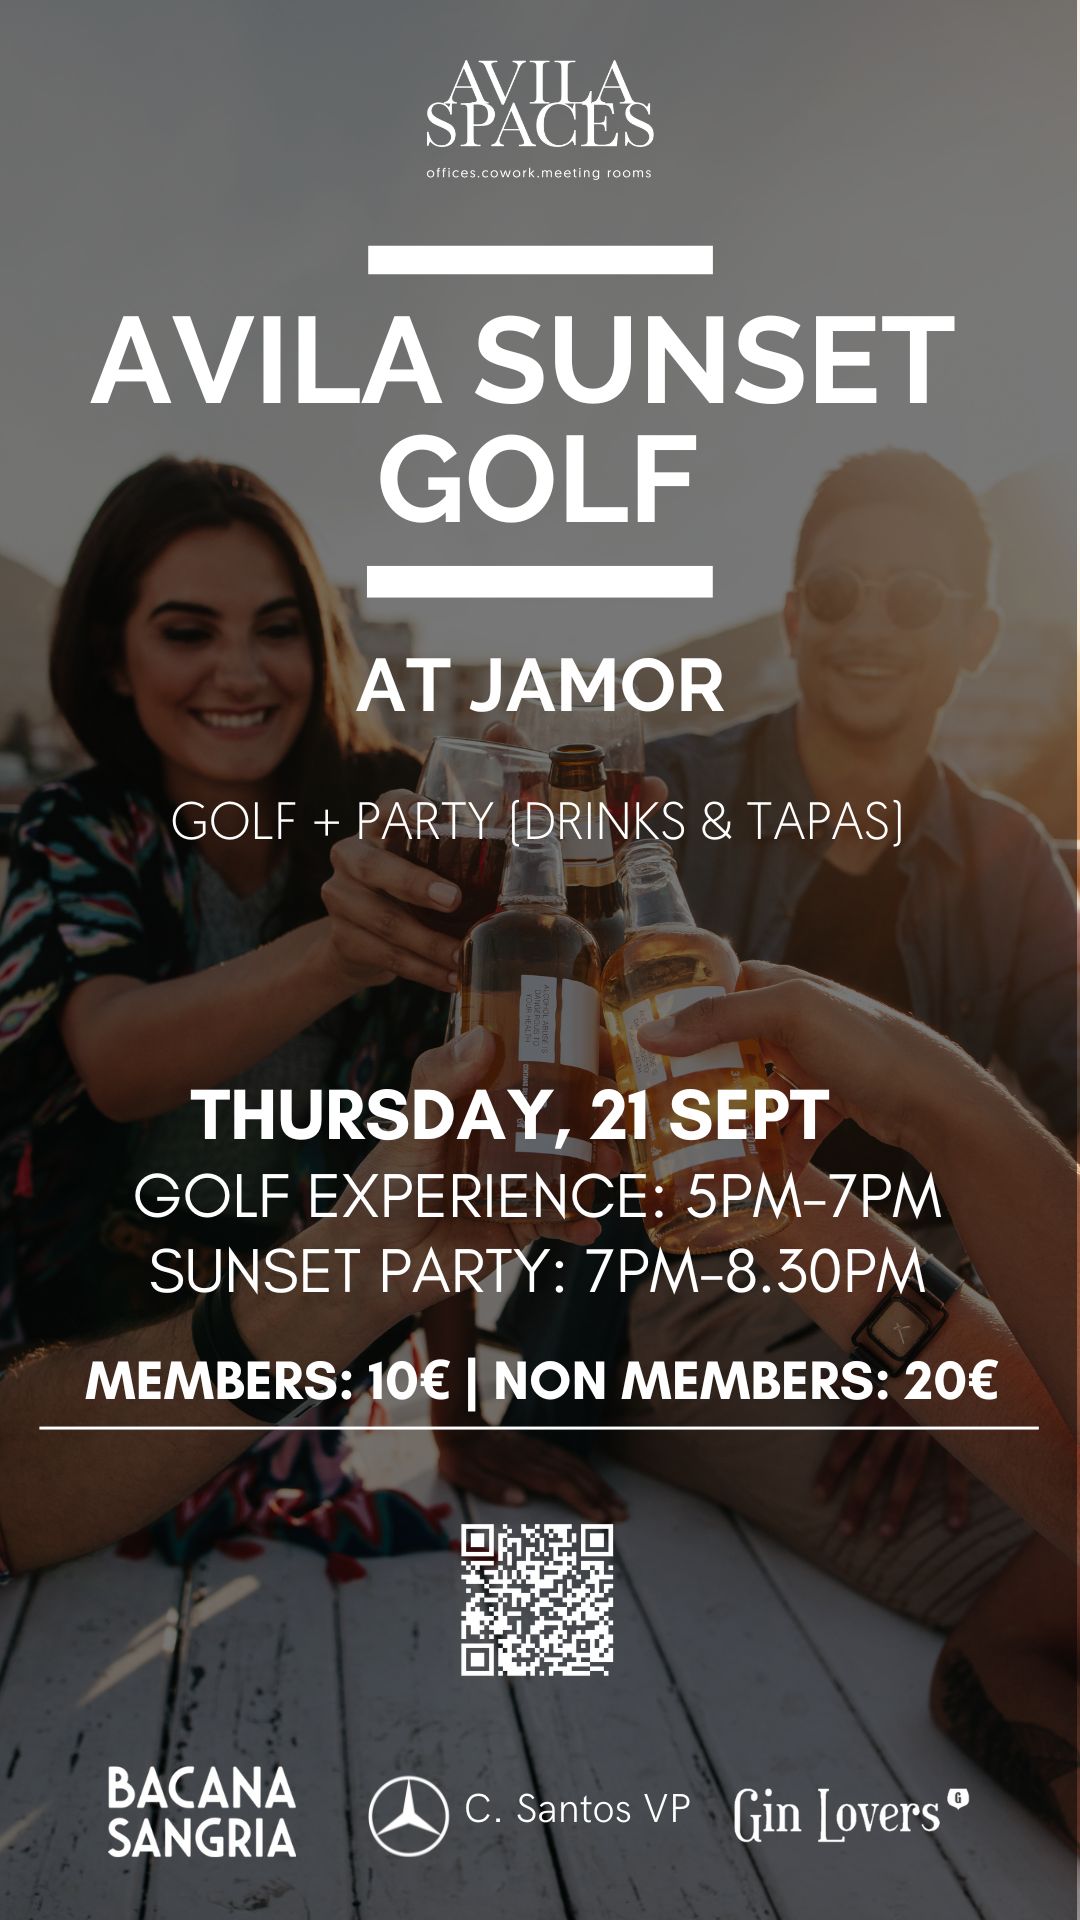 Avila Sunset Golf at Jamor